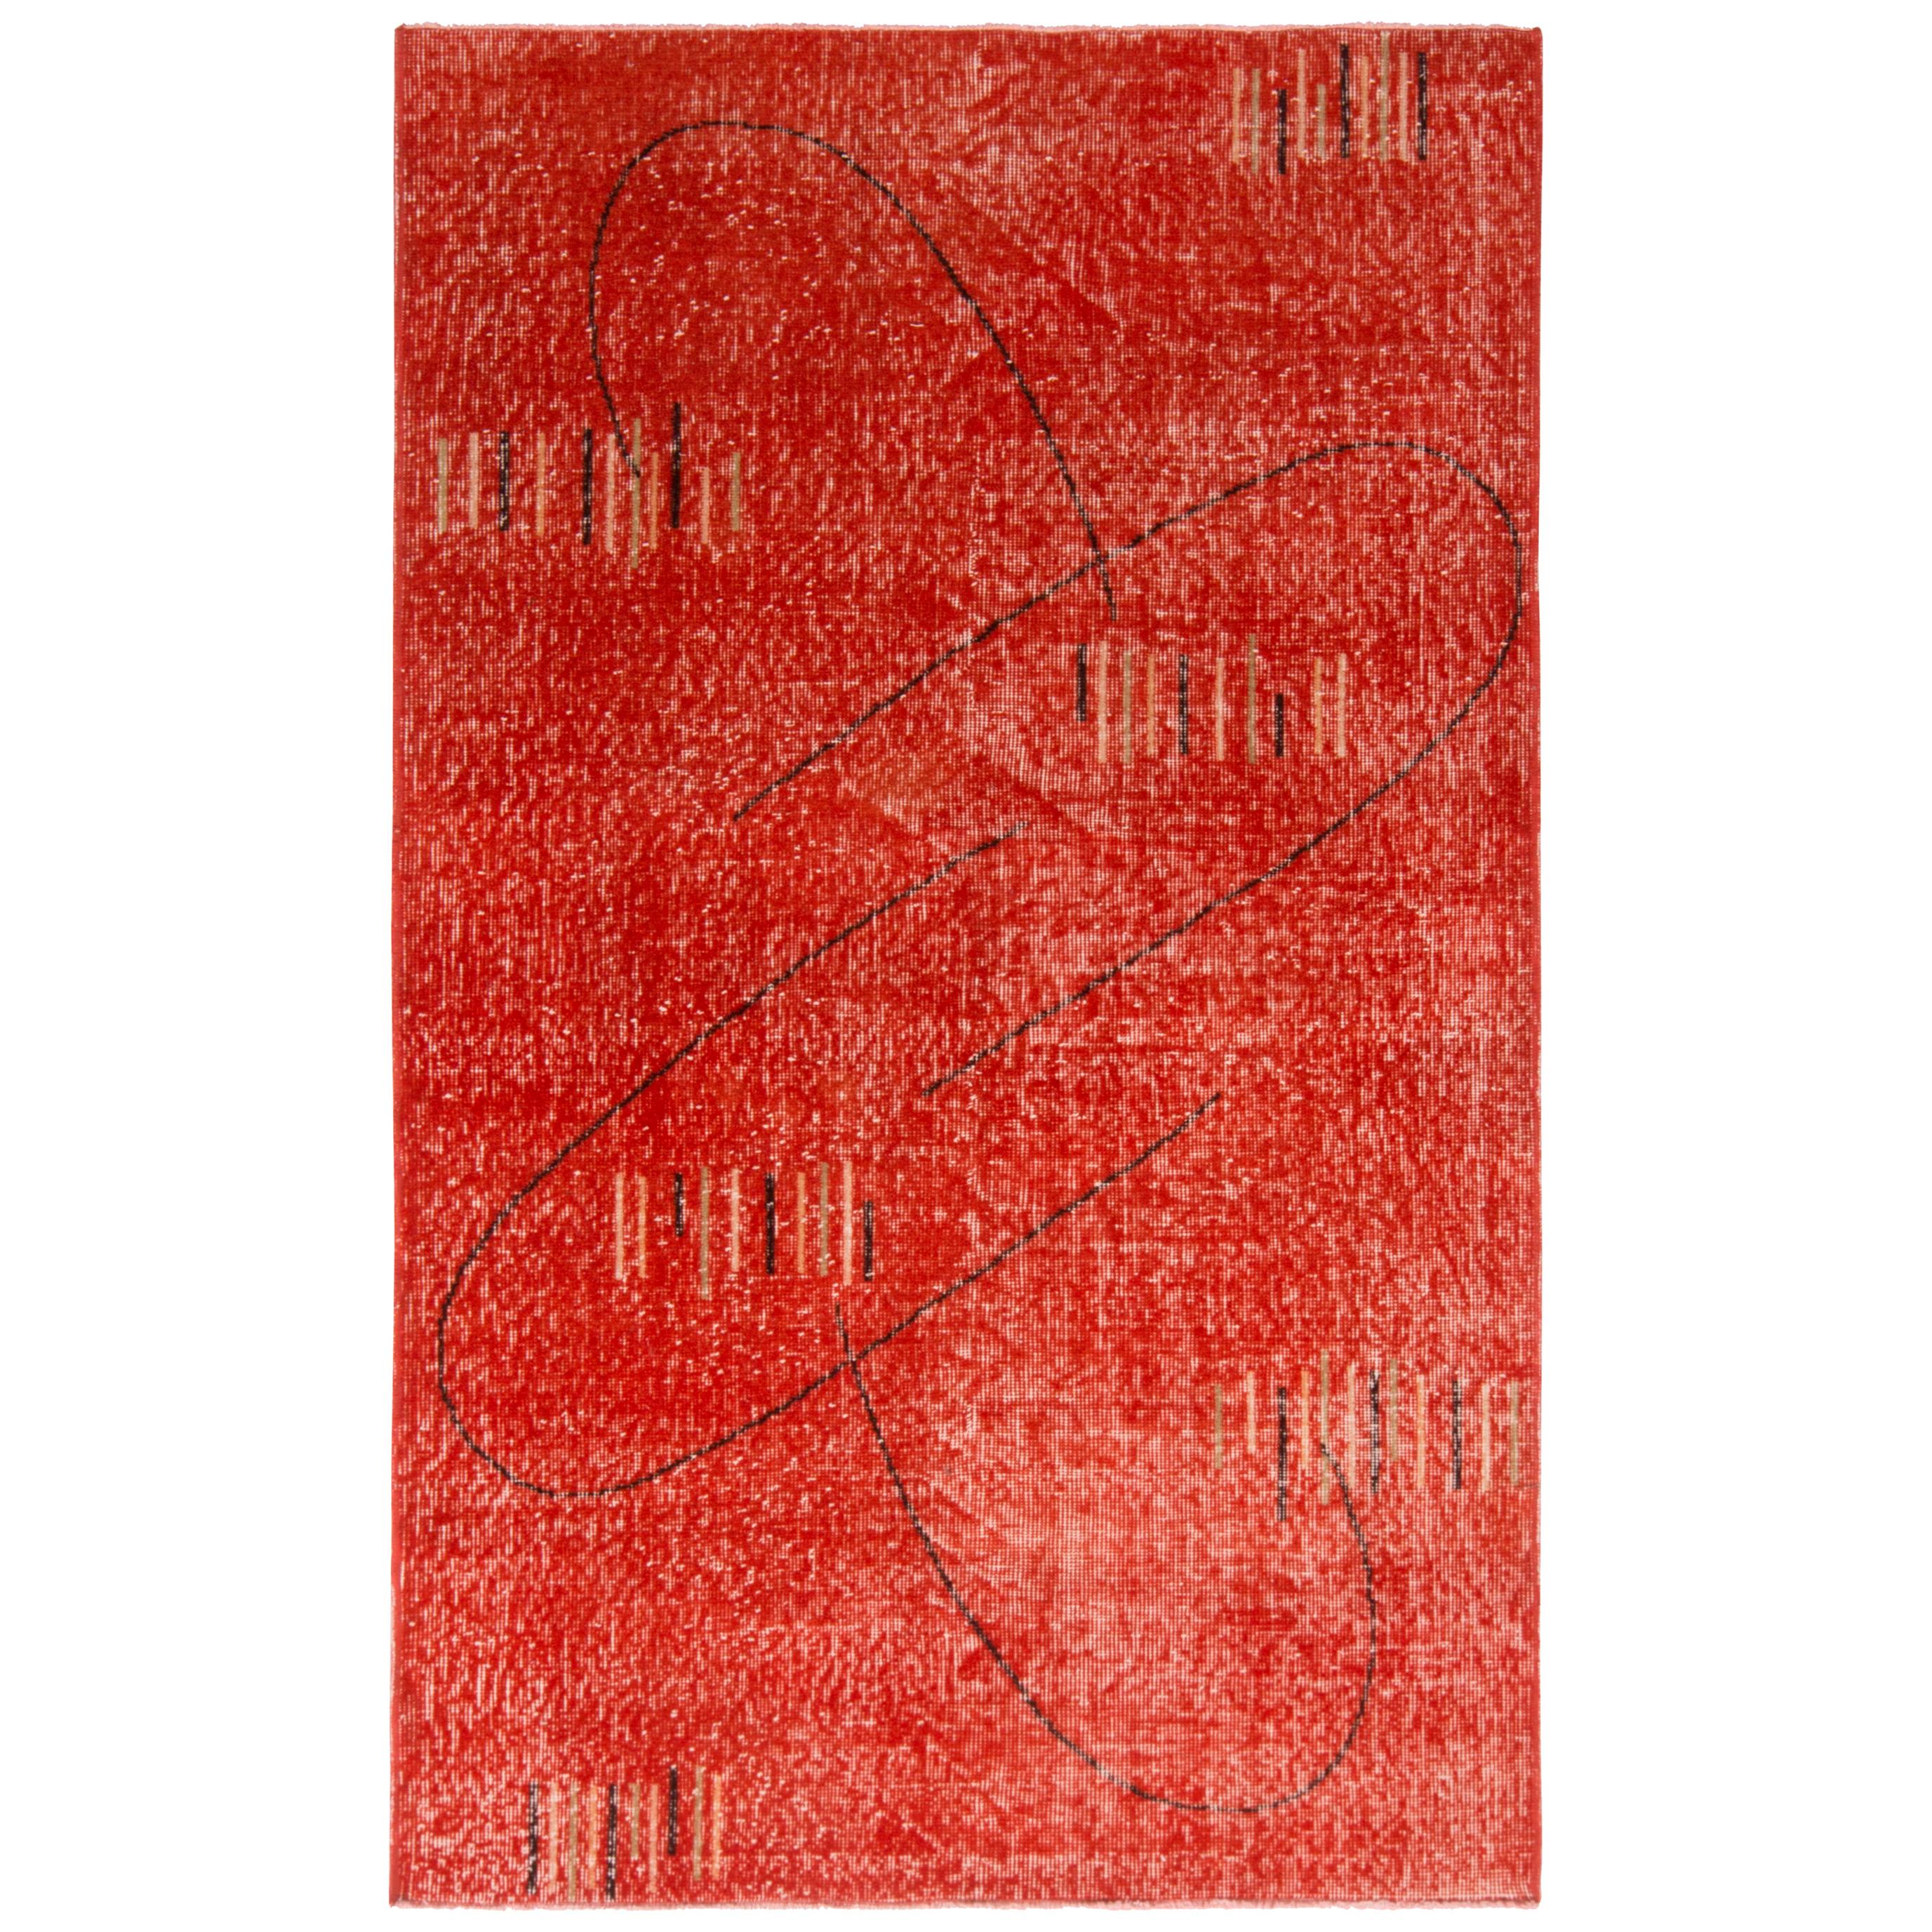 1960er Jahre Midcentury Rug Art Deco Style Rot & Schwarz Geometrisches Muster von Rug & Kilim